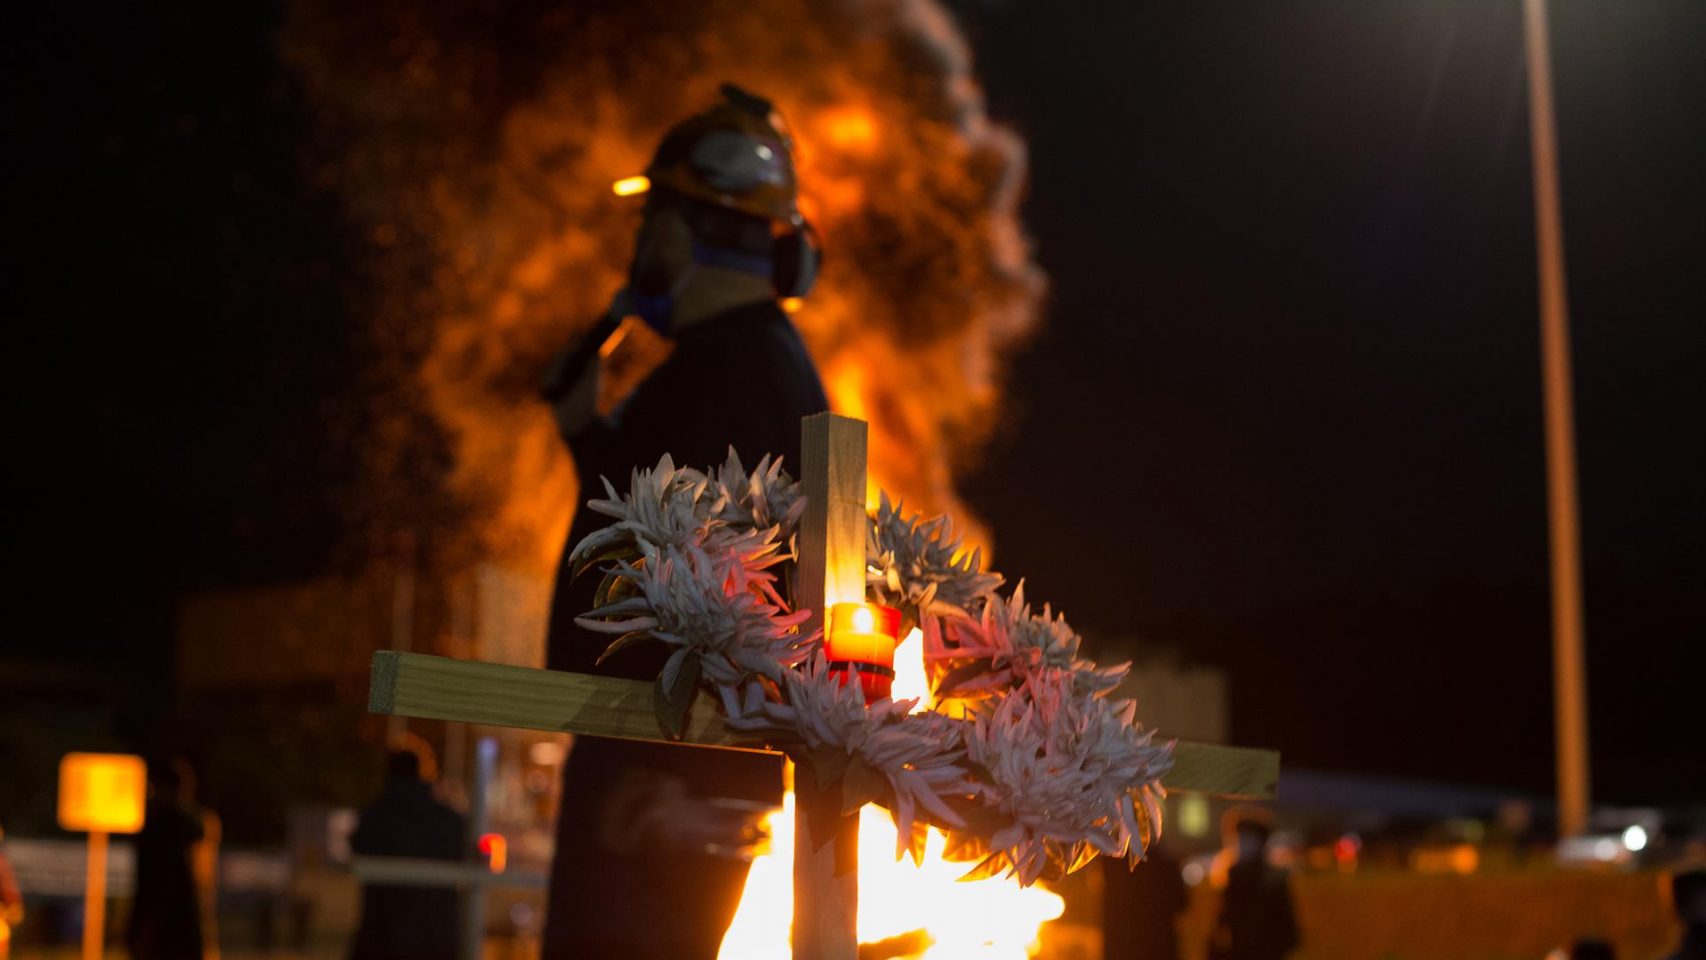 Un trabajador participa en un velatorio nocturno simbólico convocado por la fábrica de Alcoa, en en San Cibrao, A Mariña, Lugo.